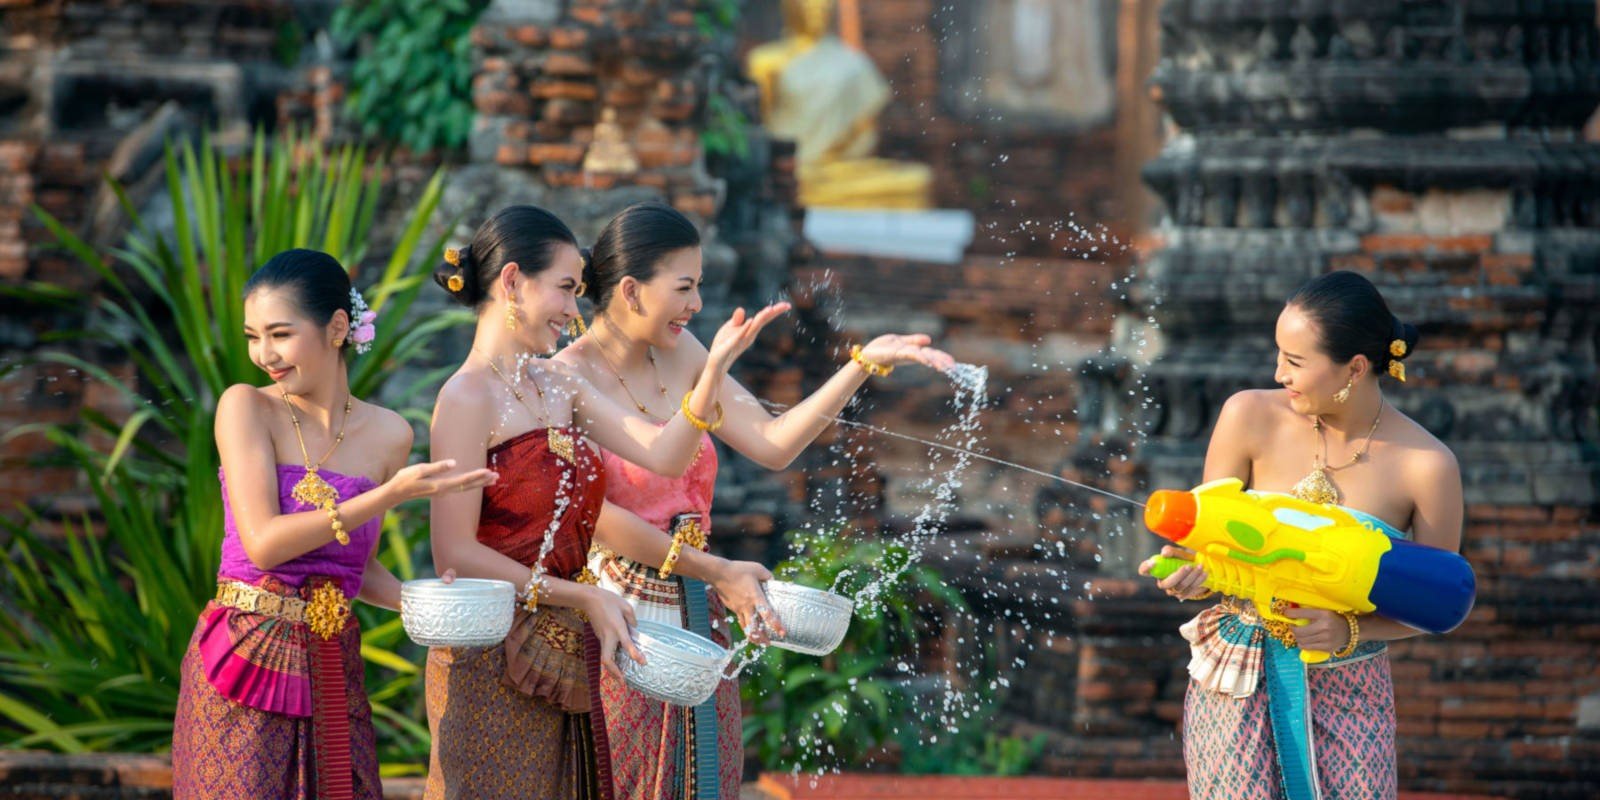 Festivals of Thailand